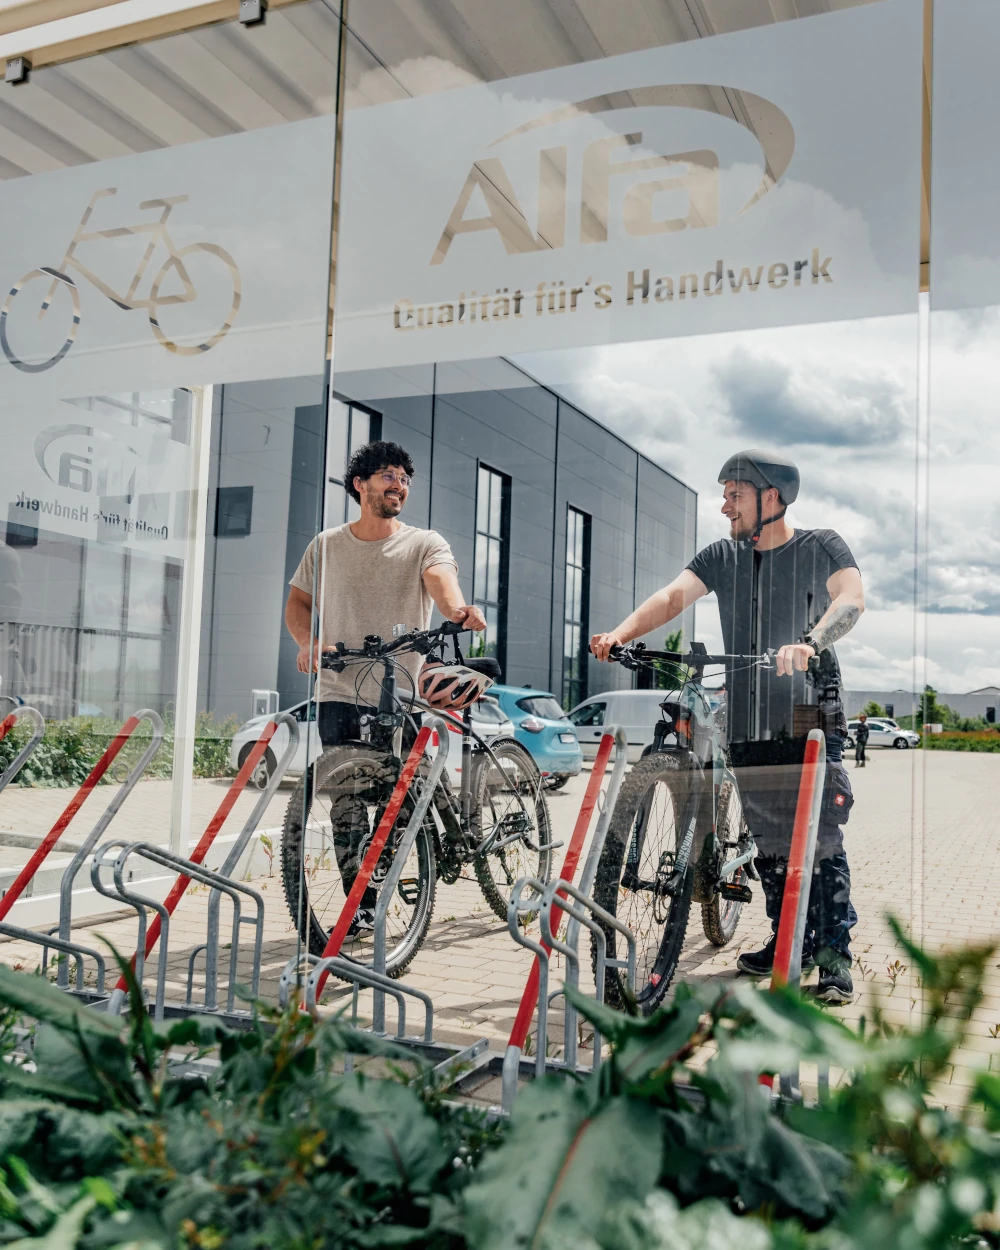 Zwei Mitarbeiter stellen ihre Fahrräder ab